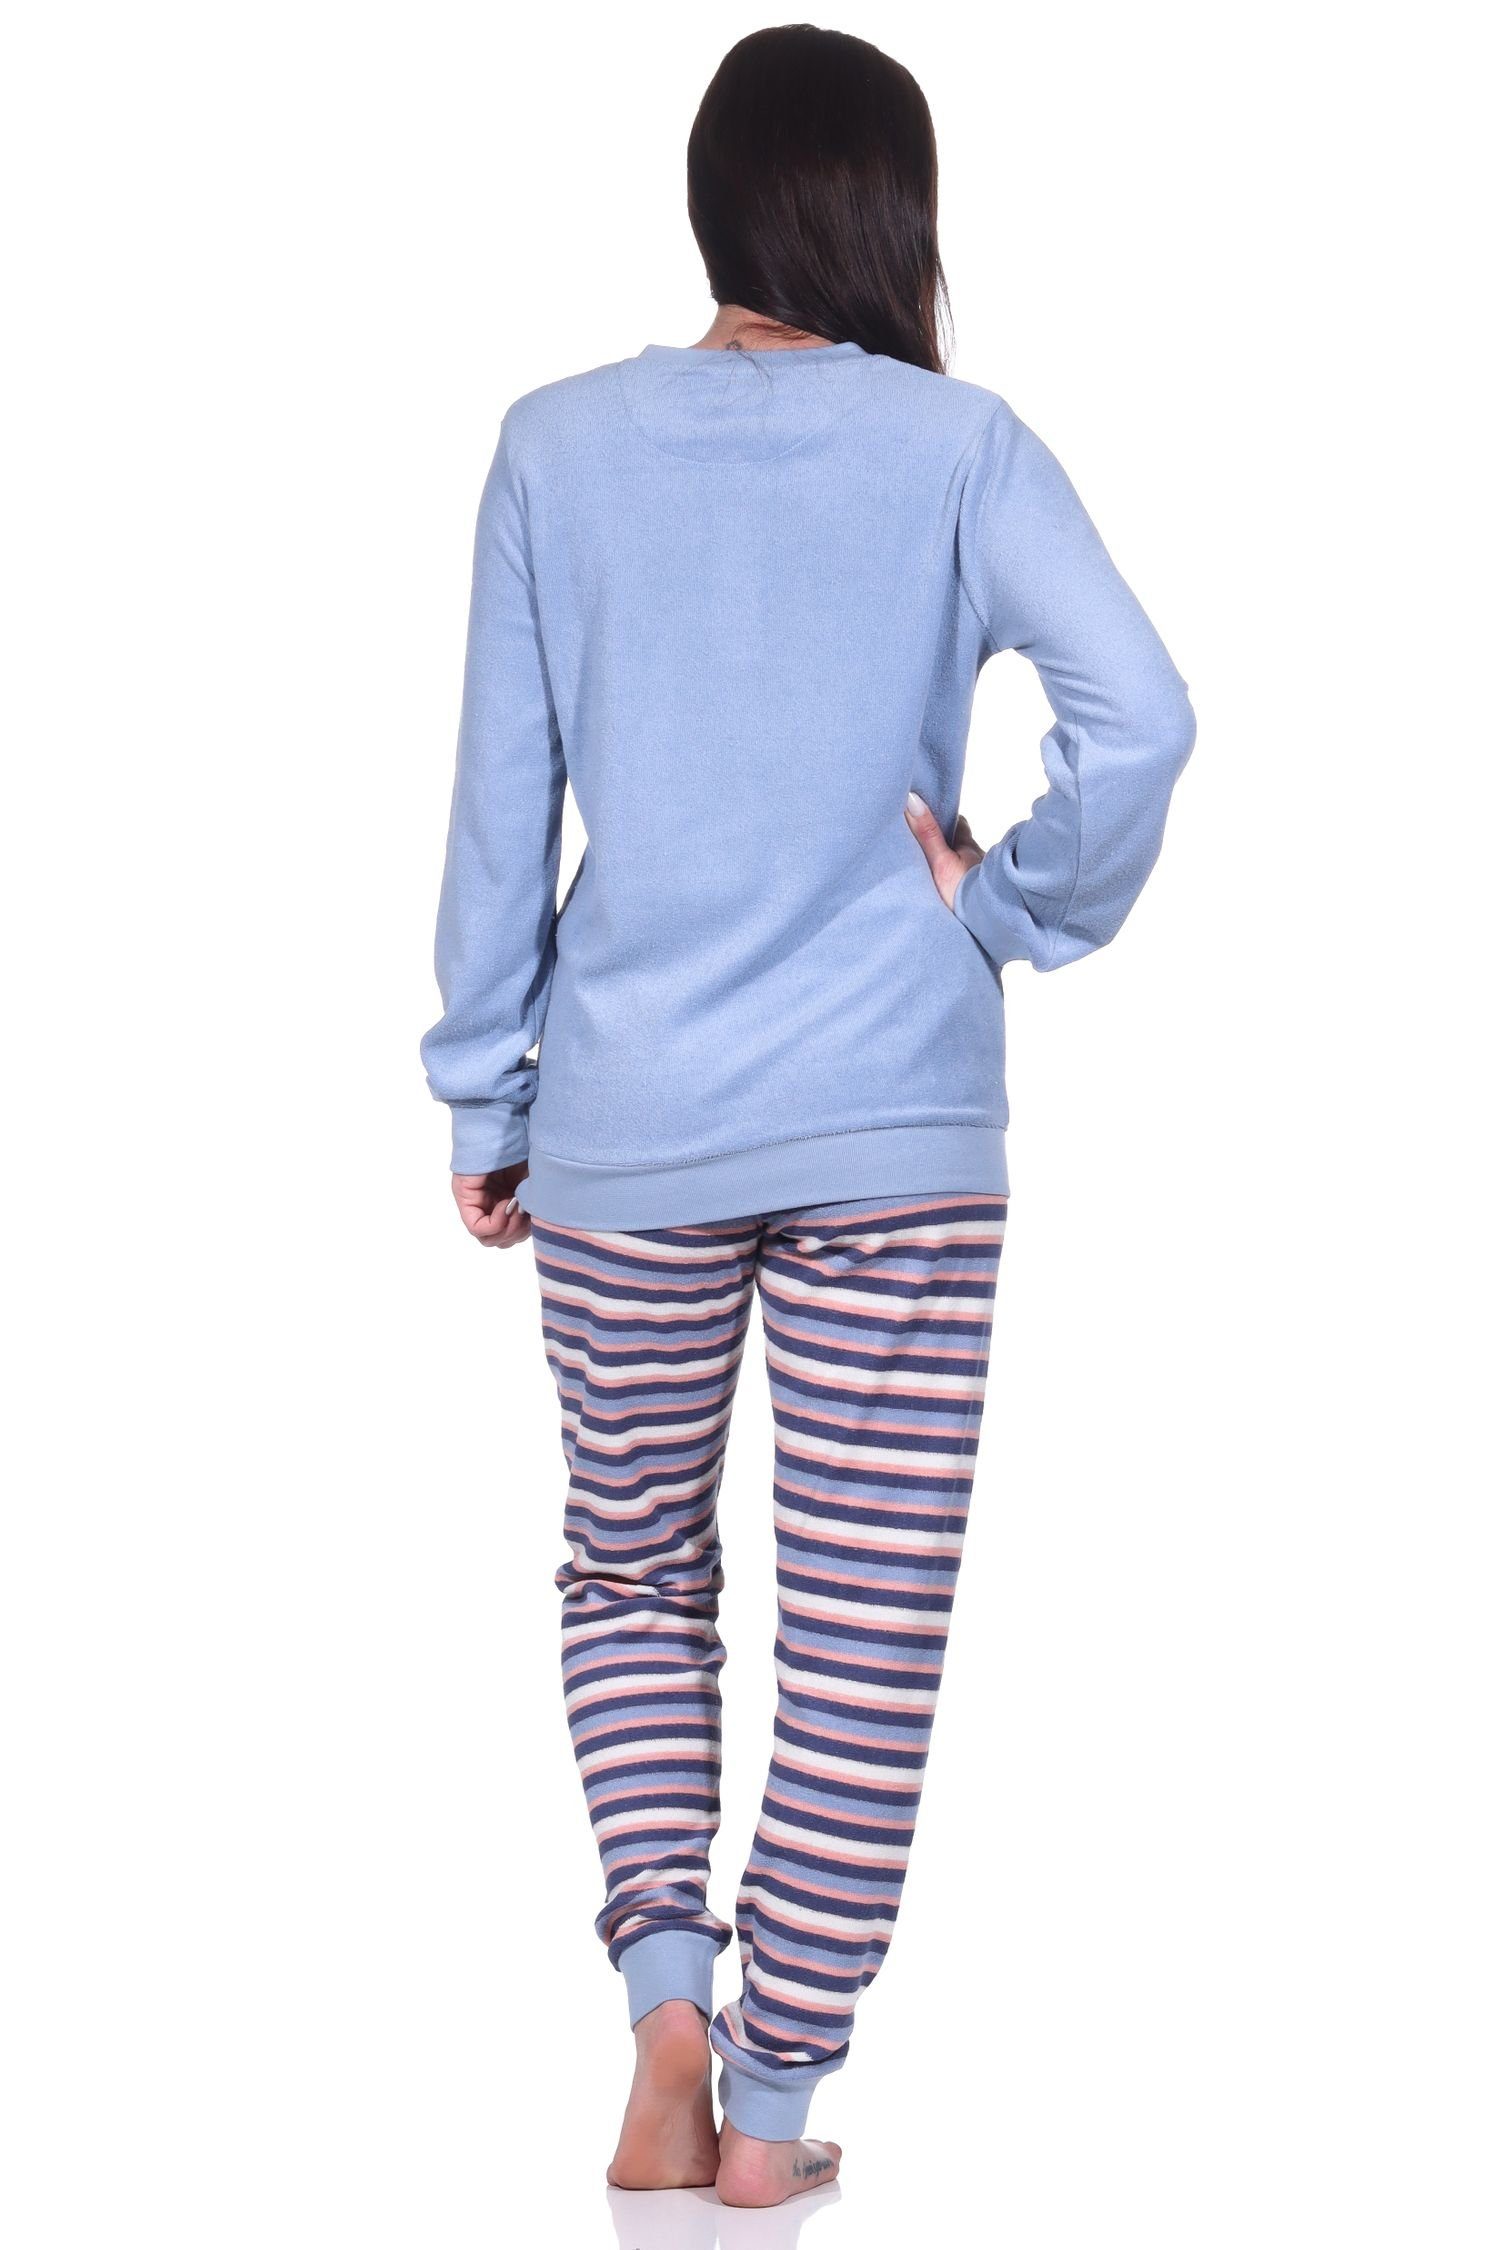 Normann hellblau Pyjama, langarm Frottee Schlafanzug mit süßem Pyjama Damen Katzen-Motiv